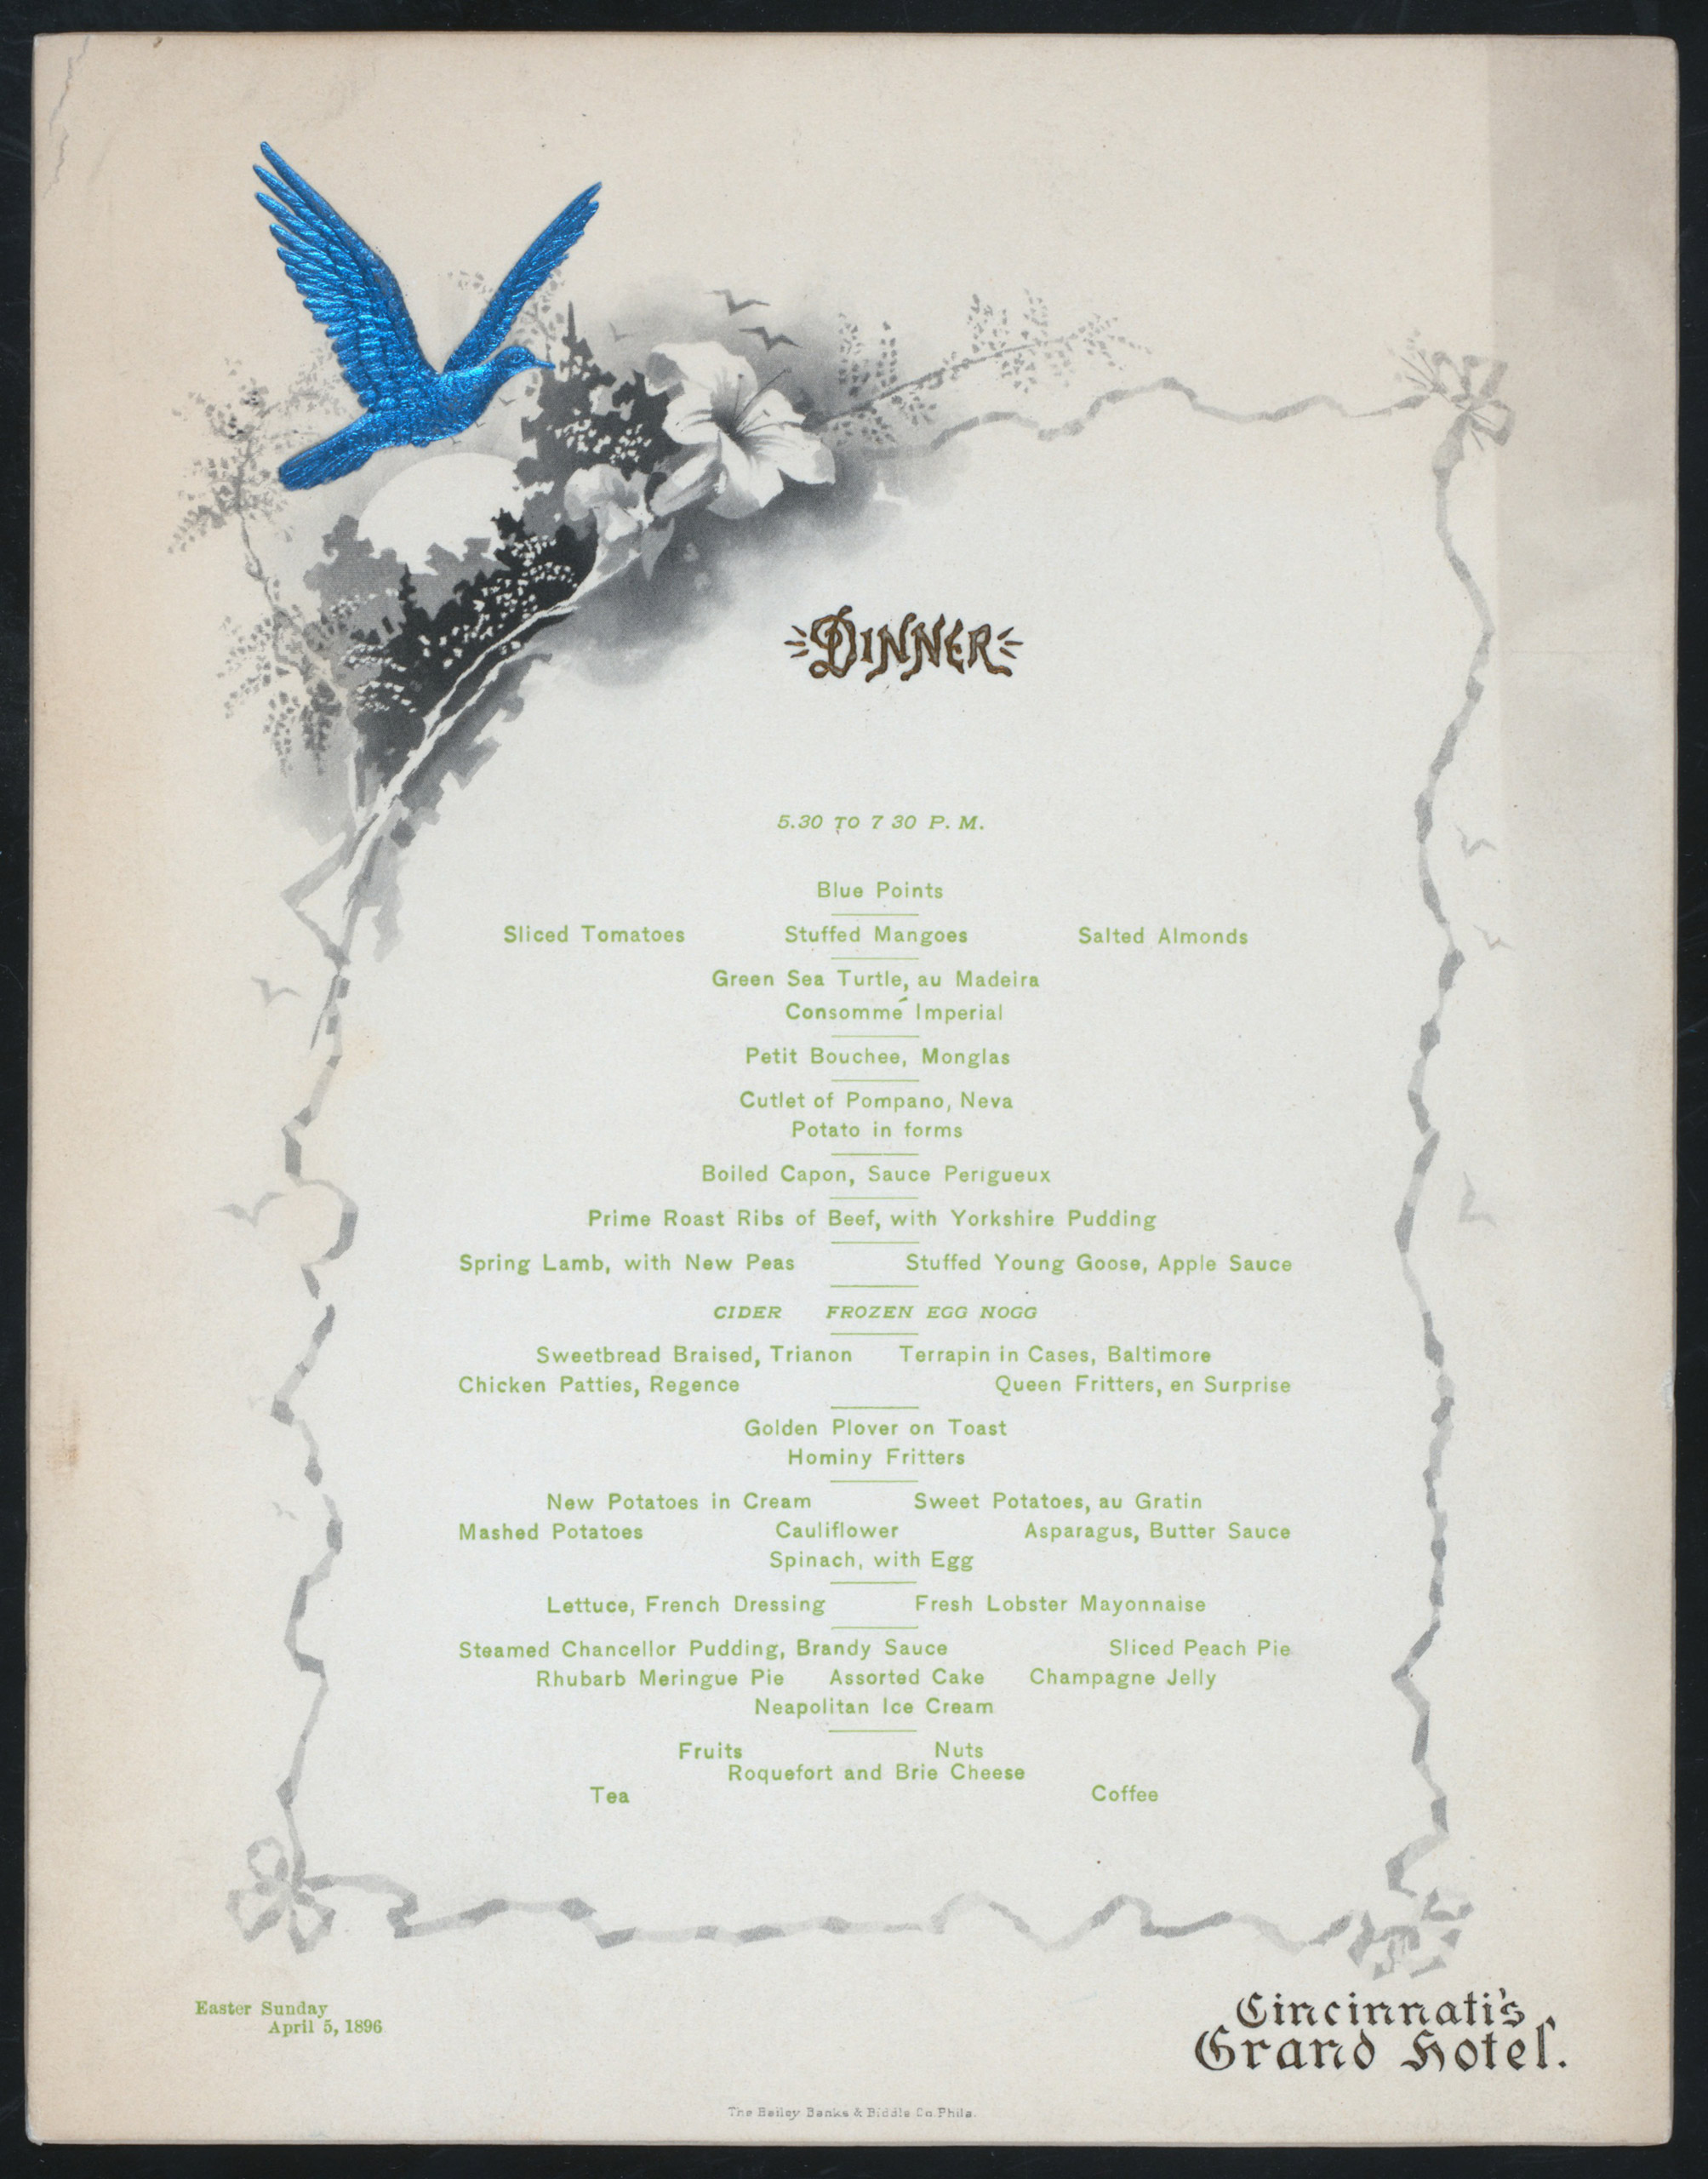 Easter Sunday dinner held by Cincinnati's Grand Hotel in Cincinnati, Ohio. 1896.